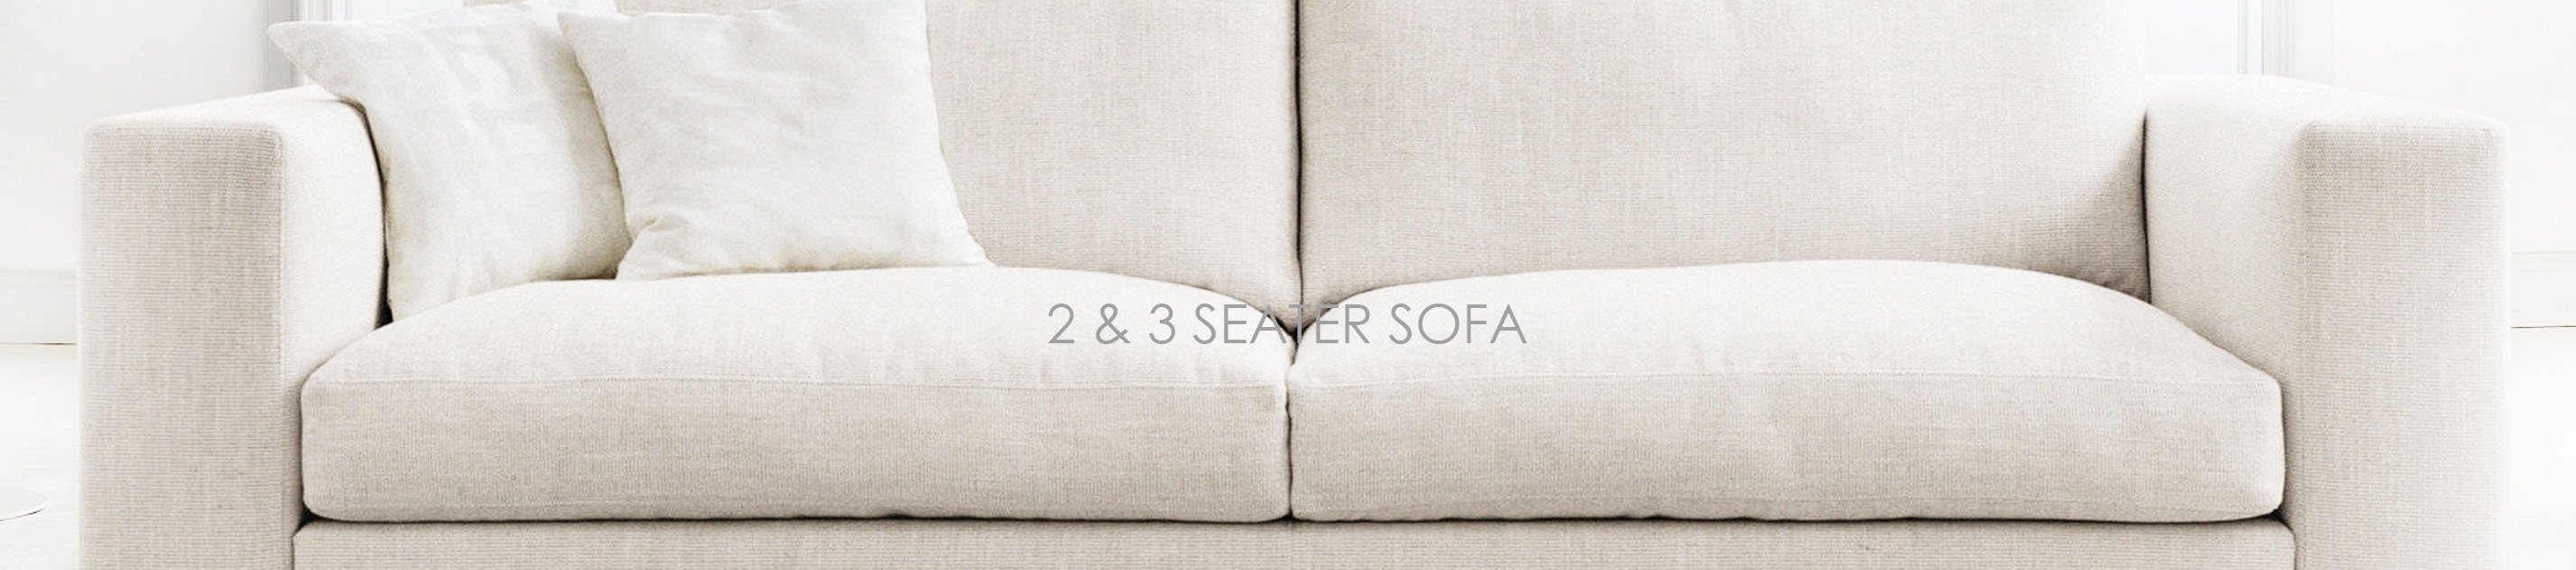 2 Seater Sofas